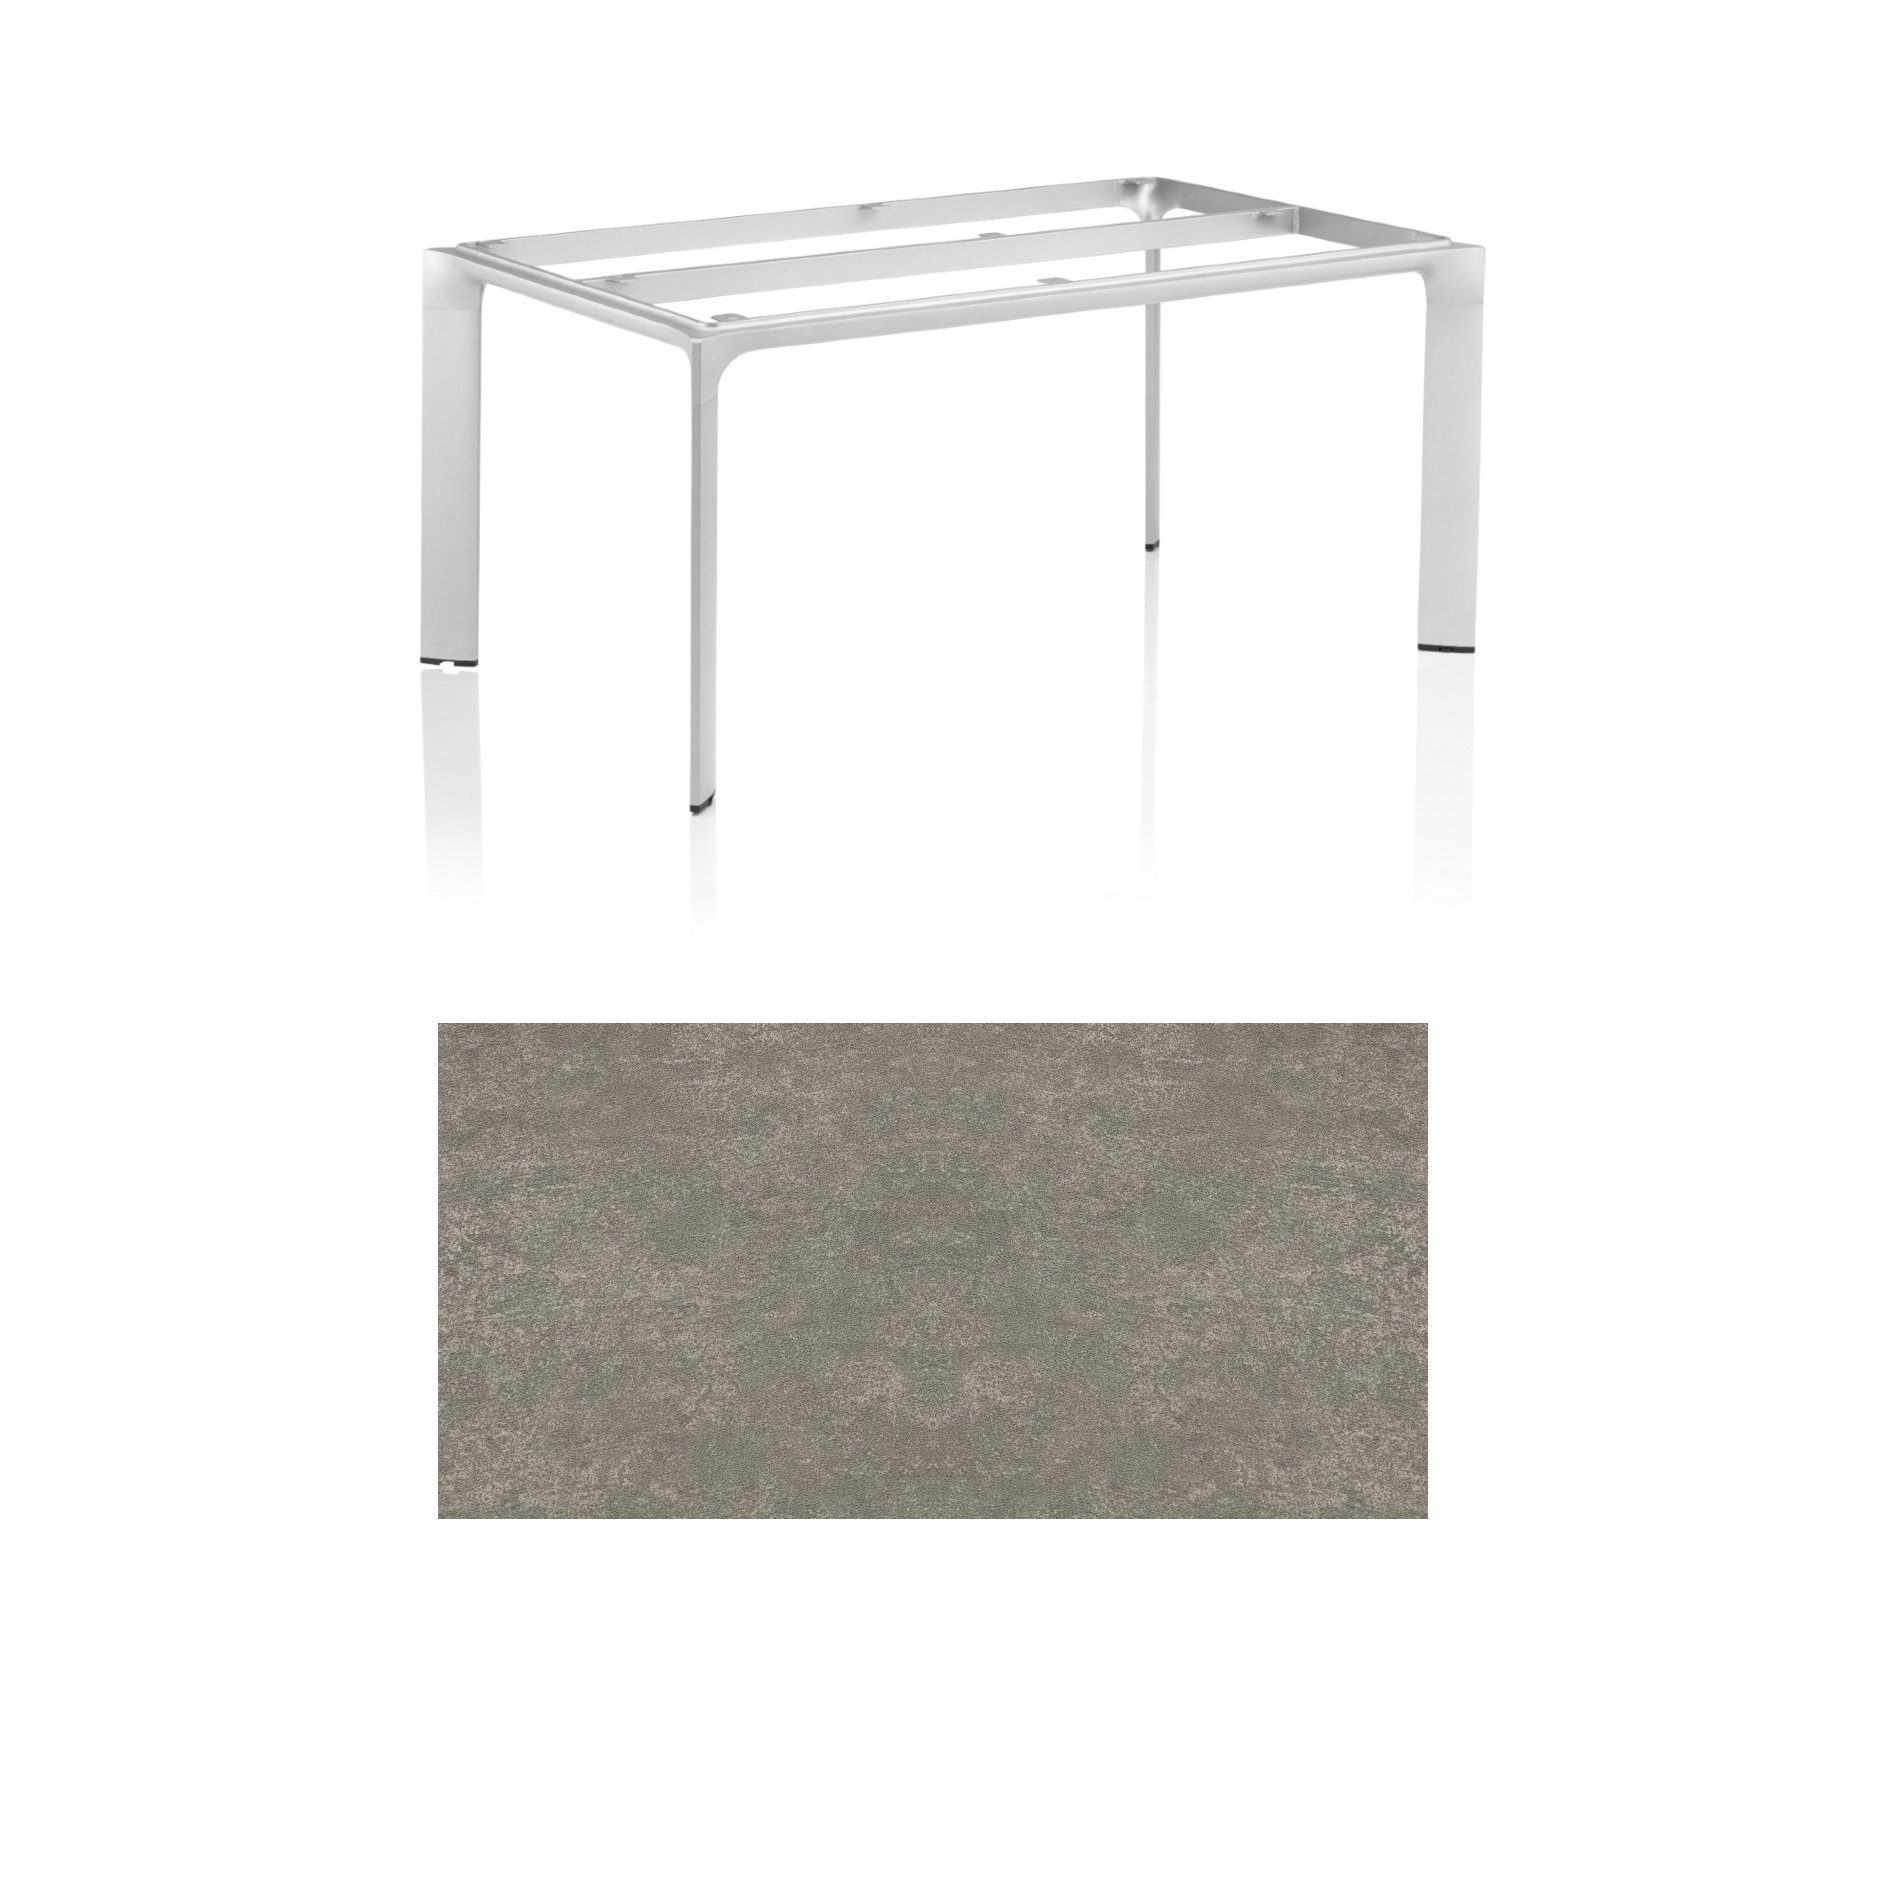 Kettler "Diamond" Tischsystem Gartentisch, Tischgestell 160x95cm, Alu silber, Tischplatte Keramik grau-taupe